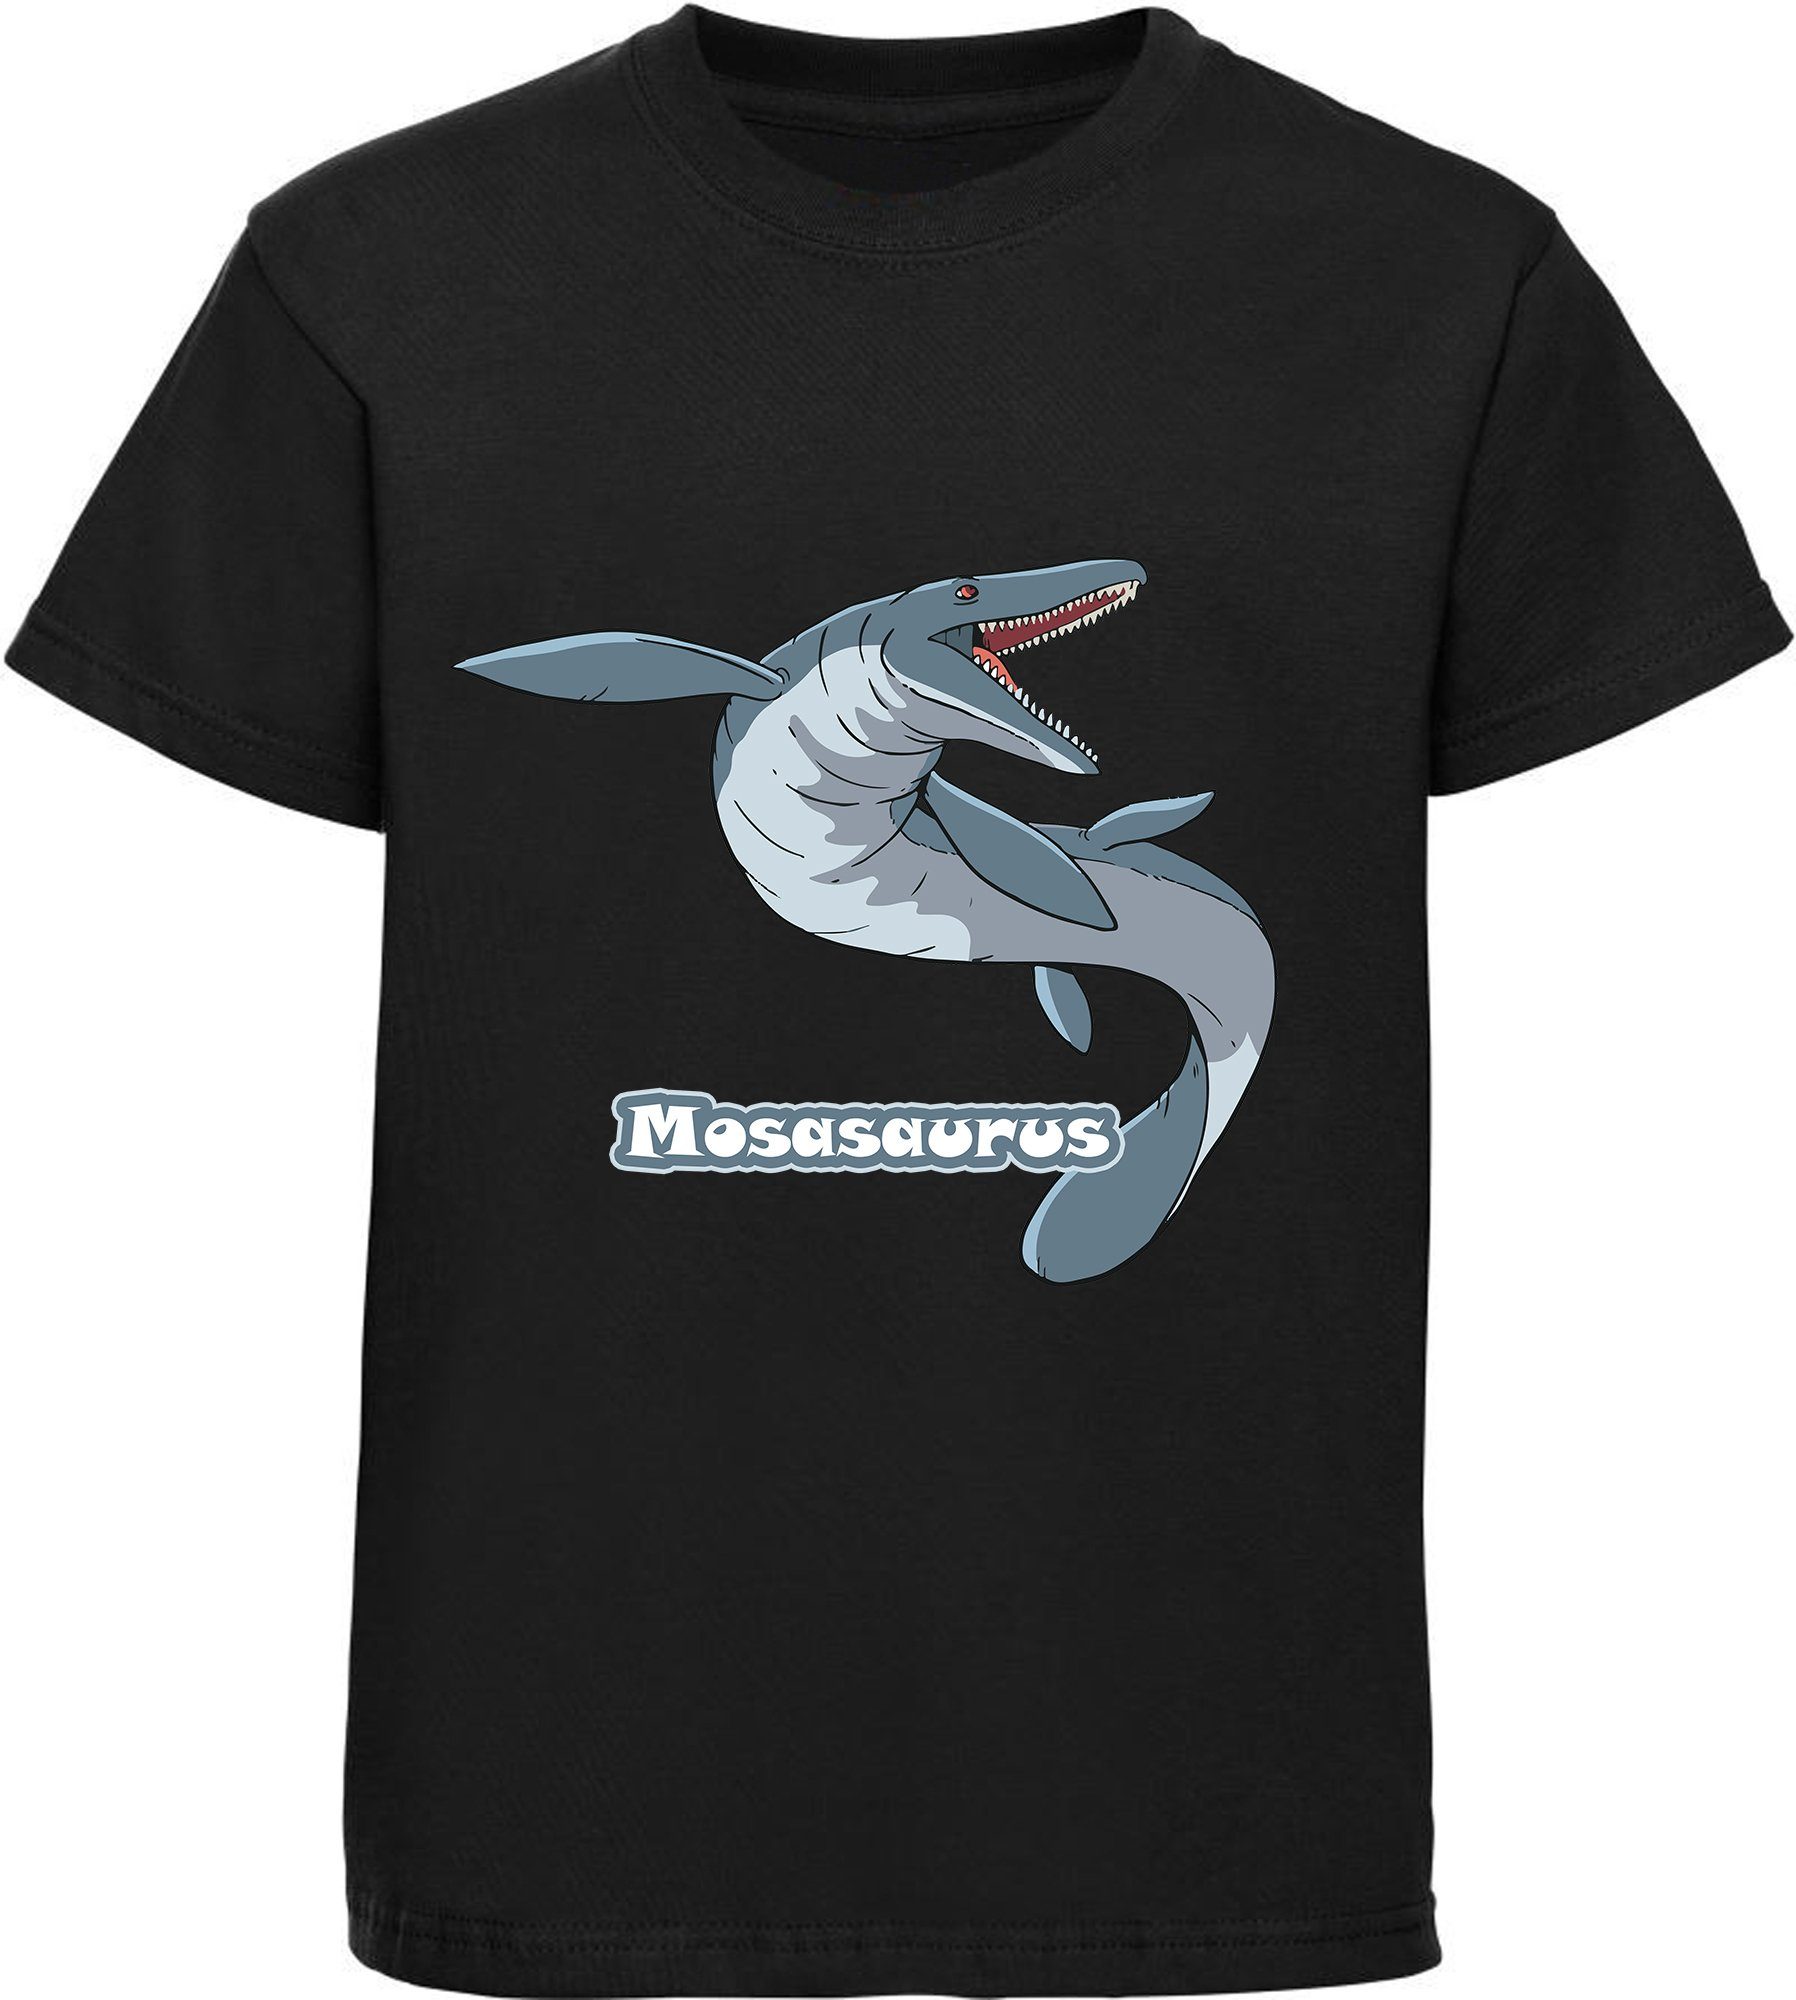 MyDesign24 T-Shirt bedrucktes Kinder T-Shirt mit Mosasaurus 100% Baumwolle mit Dino Aufdruck, schwarz i51